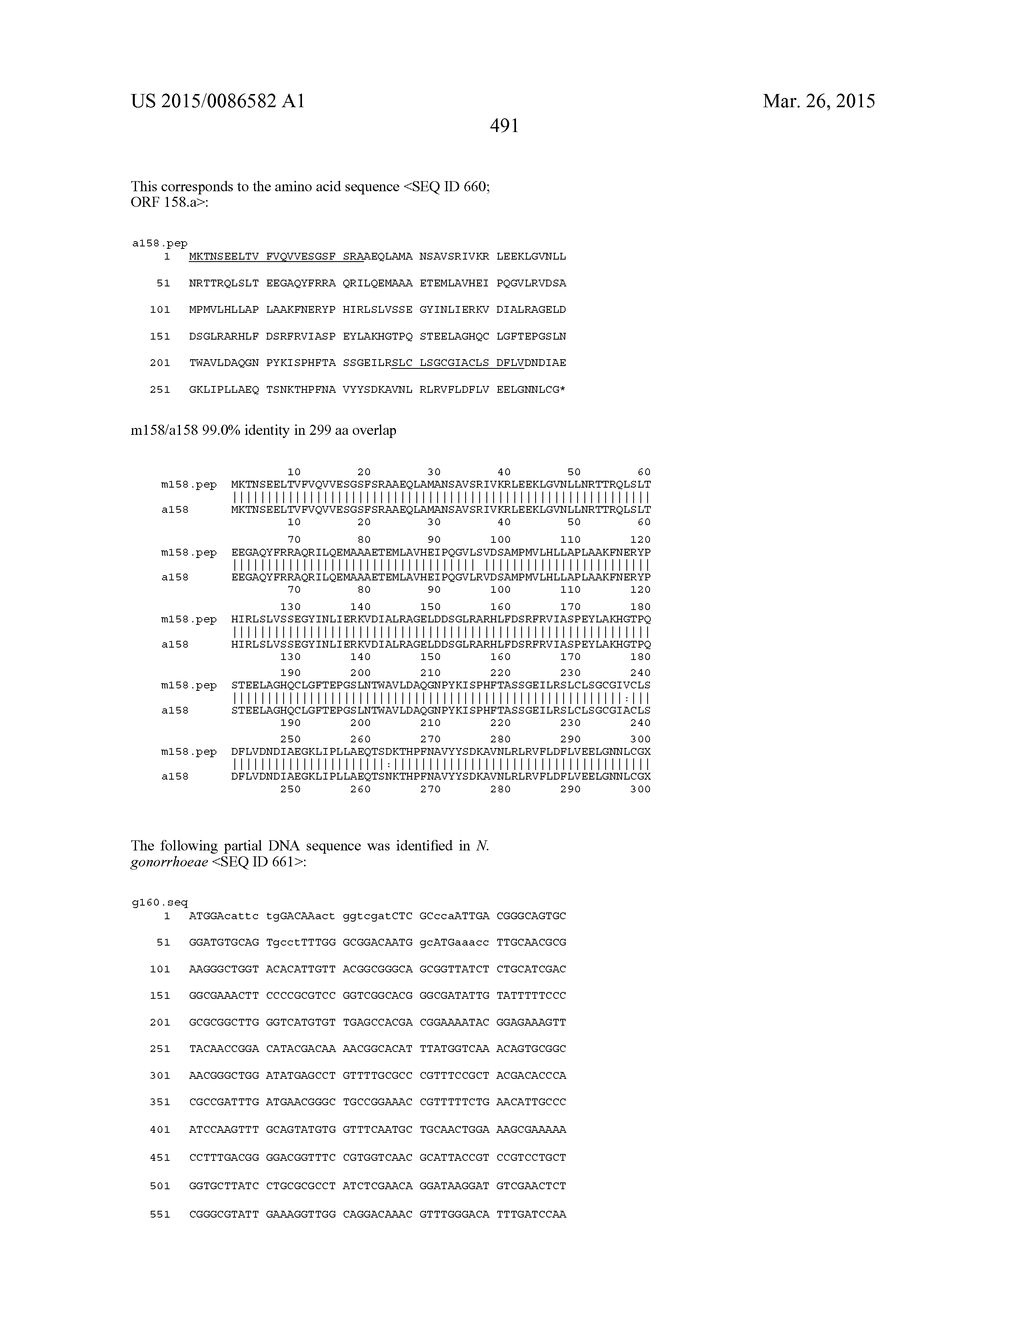 NEISSERIA MENINGITIDIS ANTIGENS AND COMPOSITIONS - diagram, schematic, and image 523